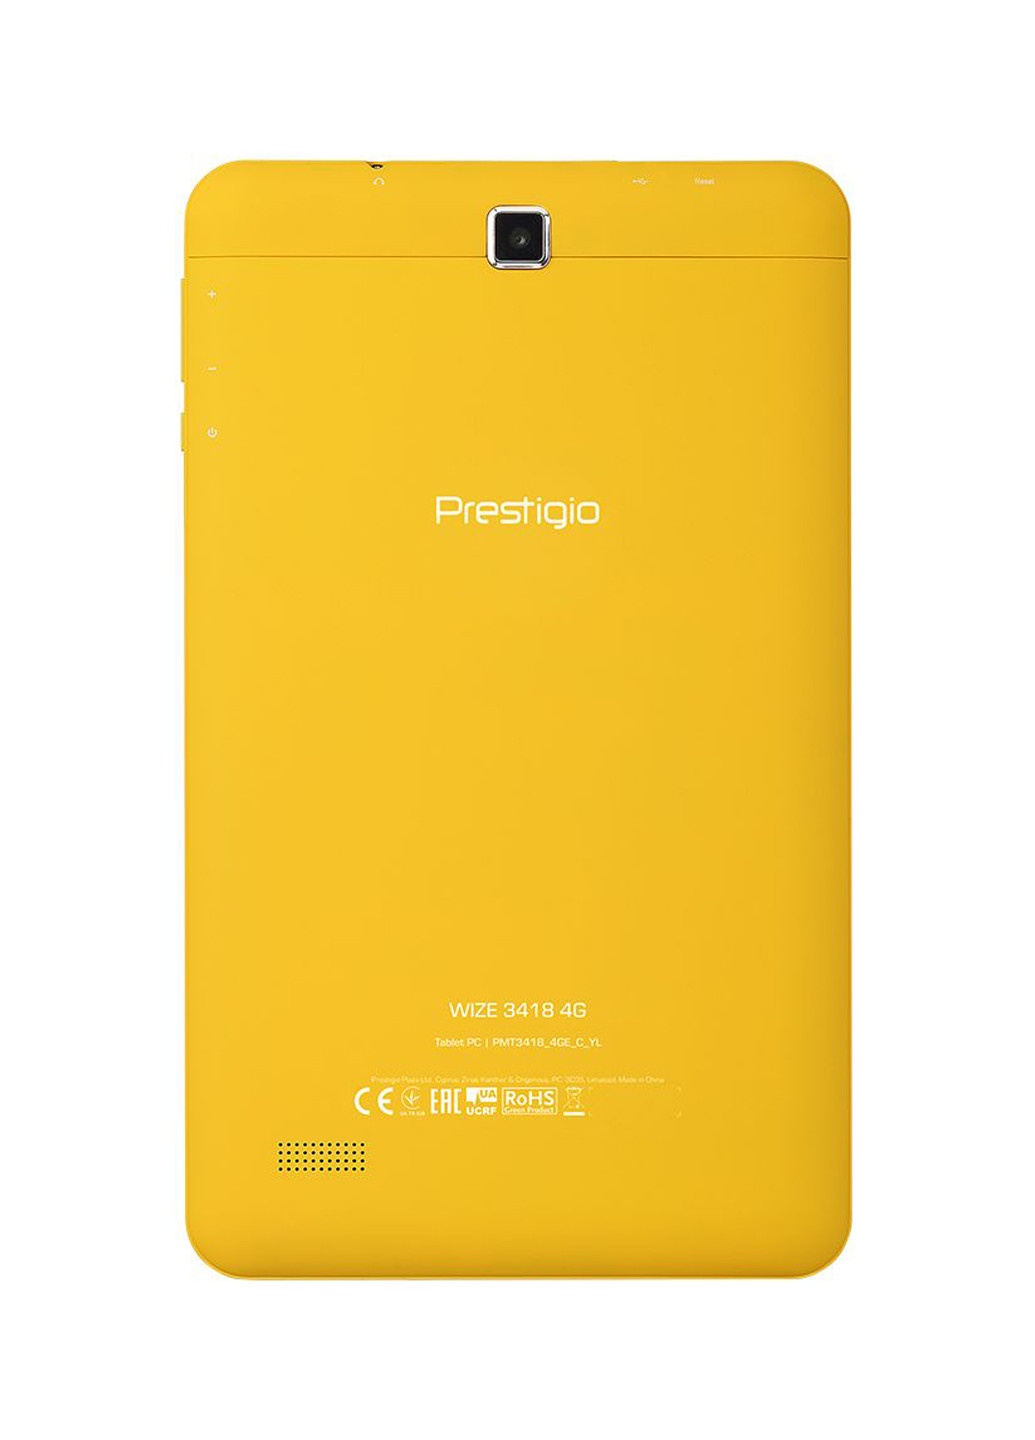 Планшет Wize 8 LTE 16GB Yellow (PMT3418_4GE_C_YL) Prestigio wize 8" lte 16gb yellow (pmt3418_4ge_c_yl) (131985146)